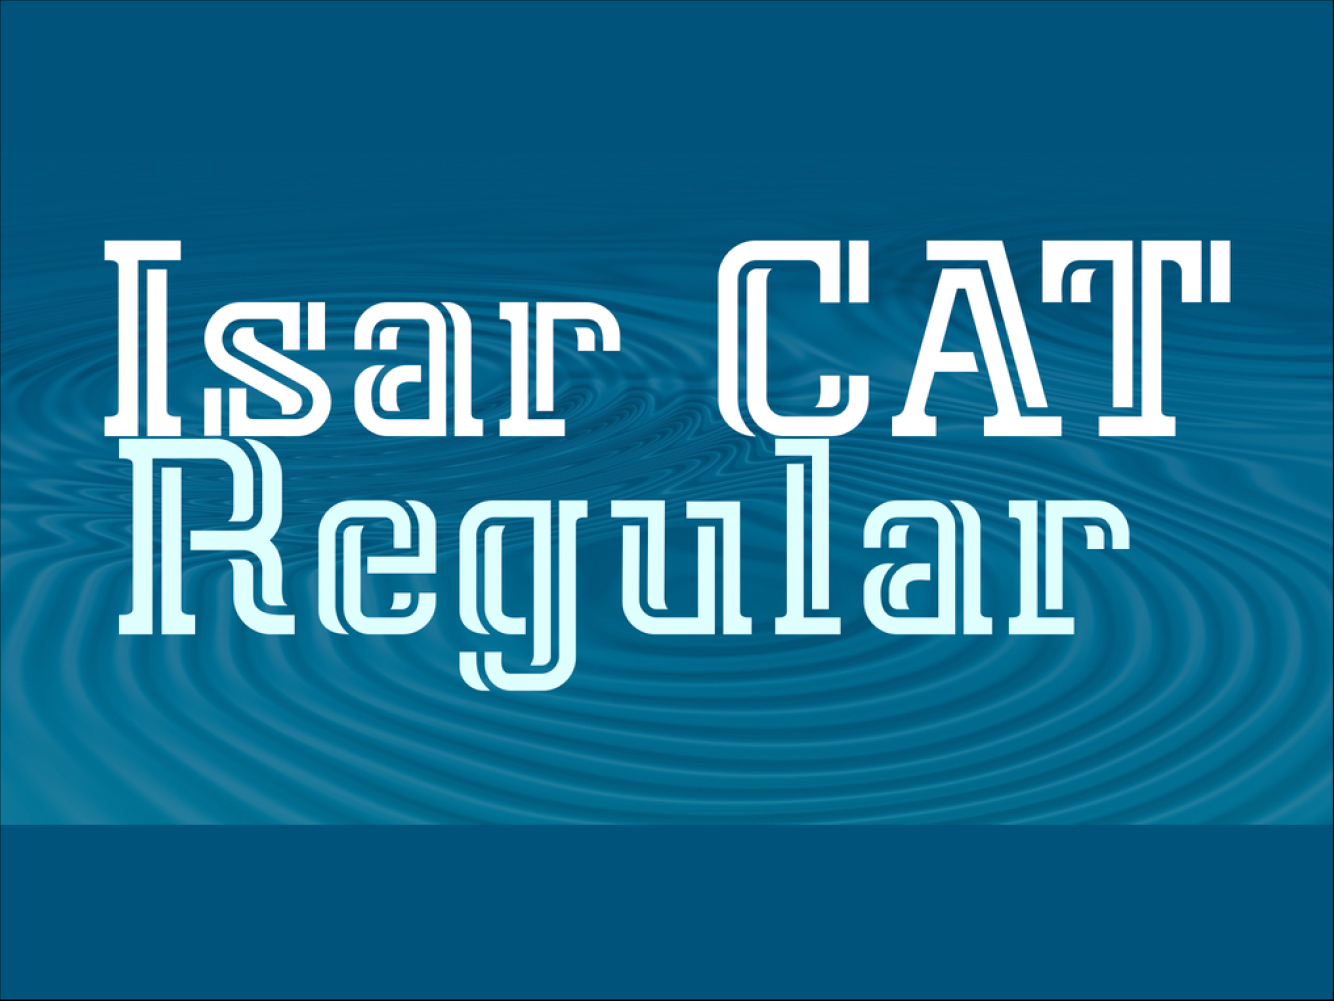 Isar CAT